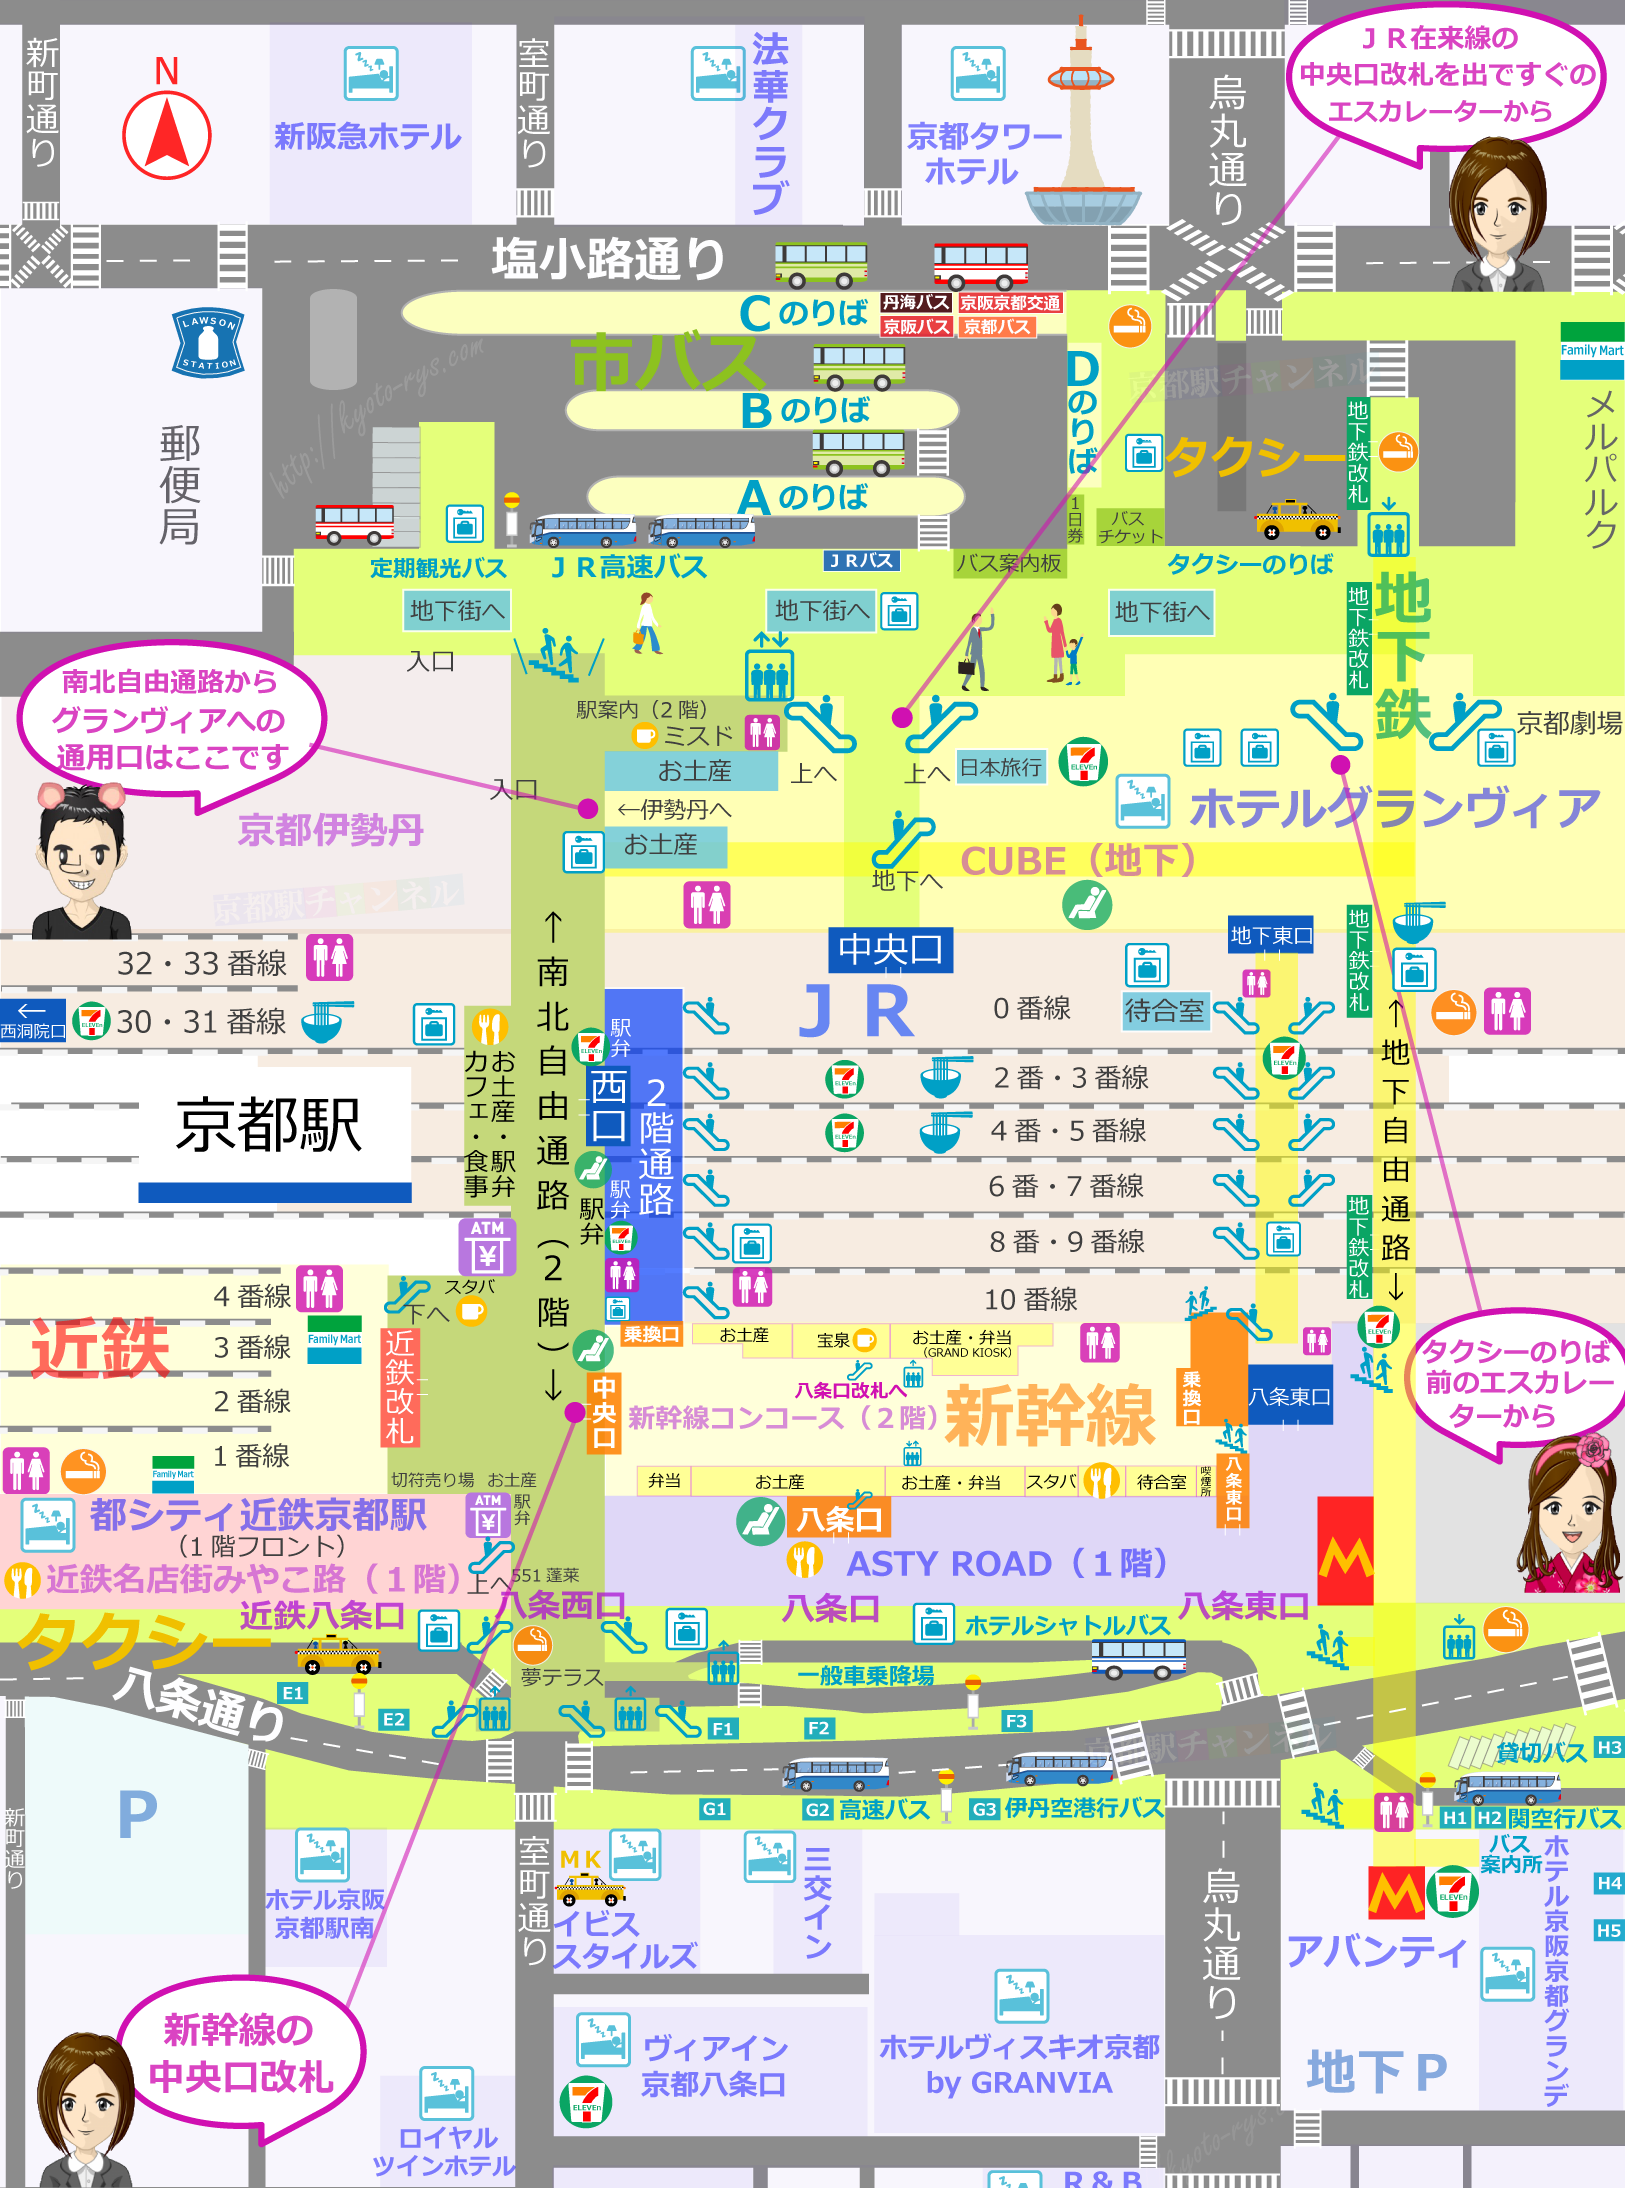 京都駅の構内図とグランヴィアの地図